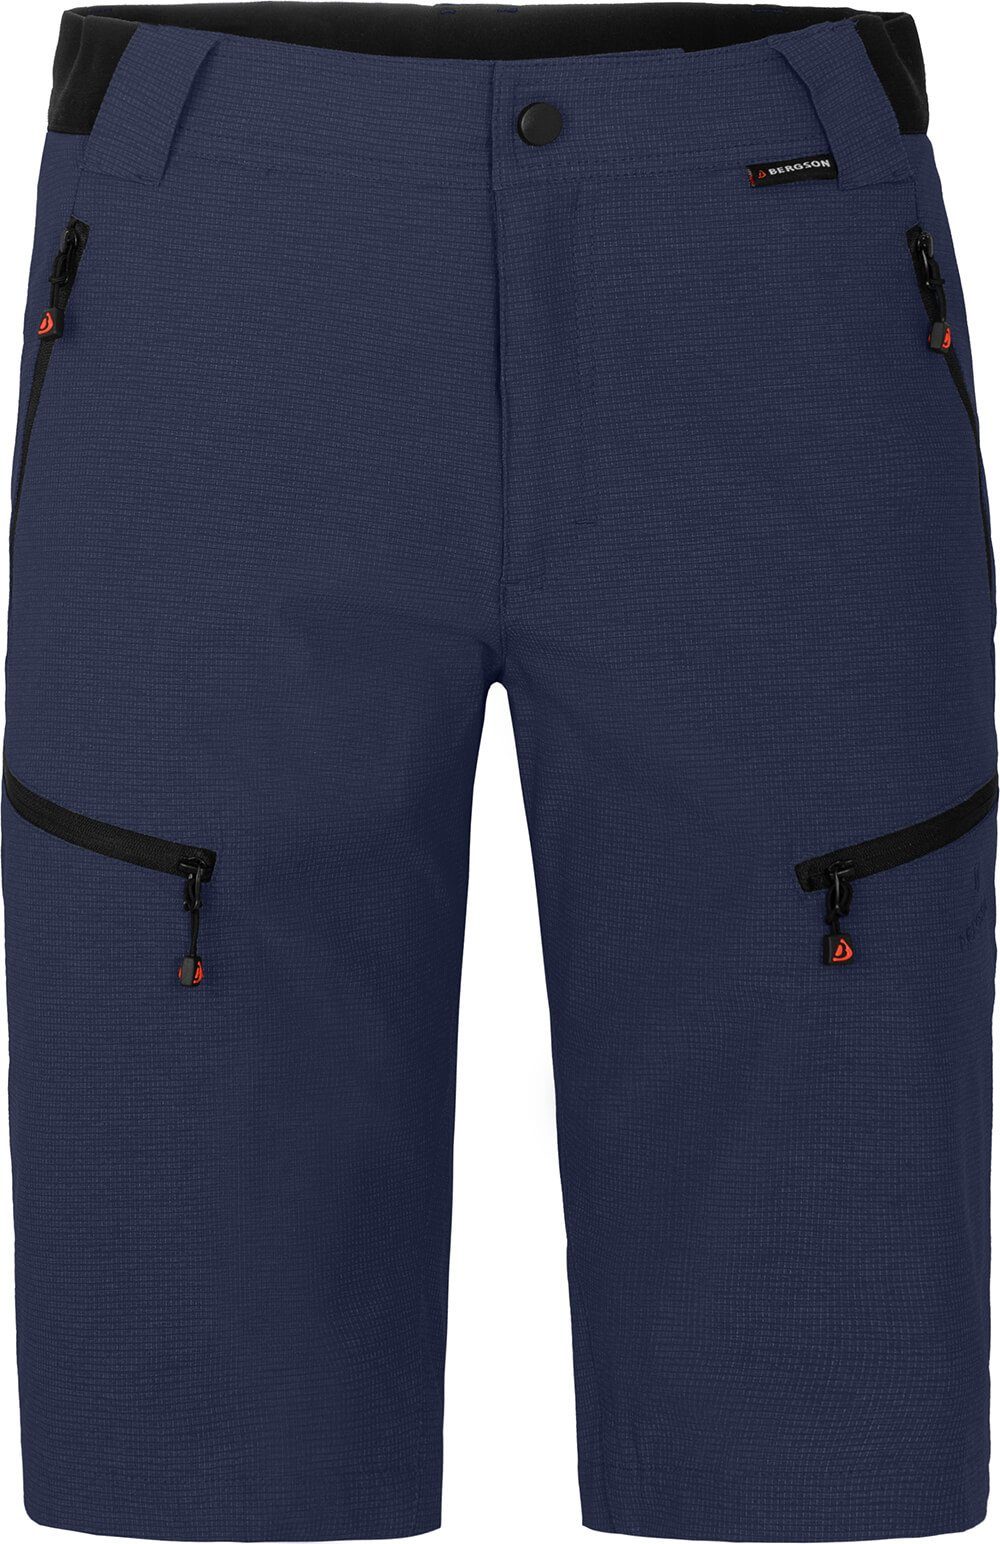 Bermuda Herren Wandershorts, Normalgrößen, LEBIKO elastisch, peacoat robust, Bergson blau Outdoorhose